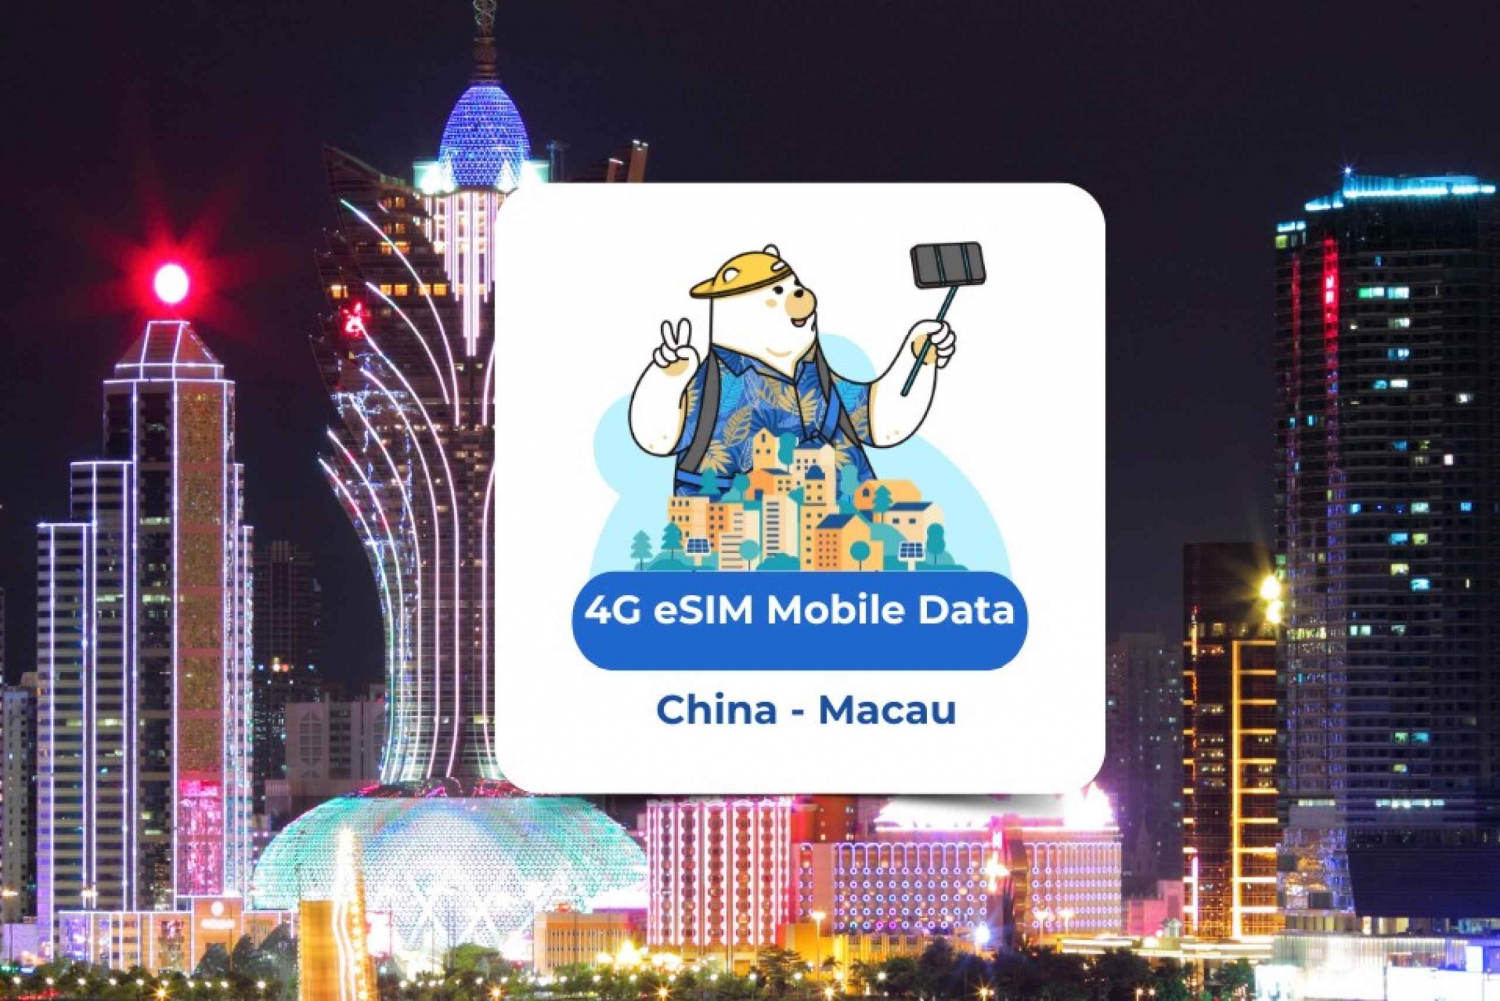 China - Macao : eSIM Datos Móviles